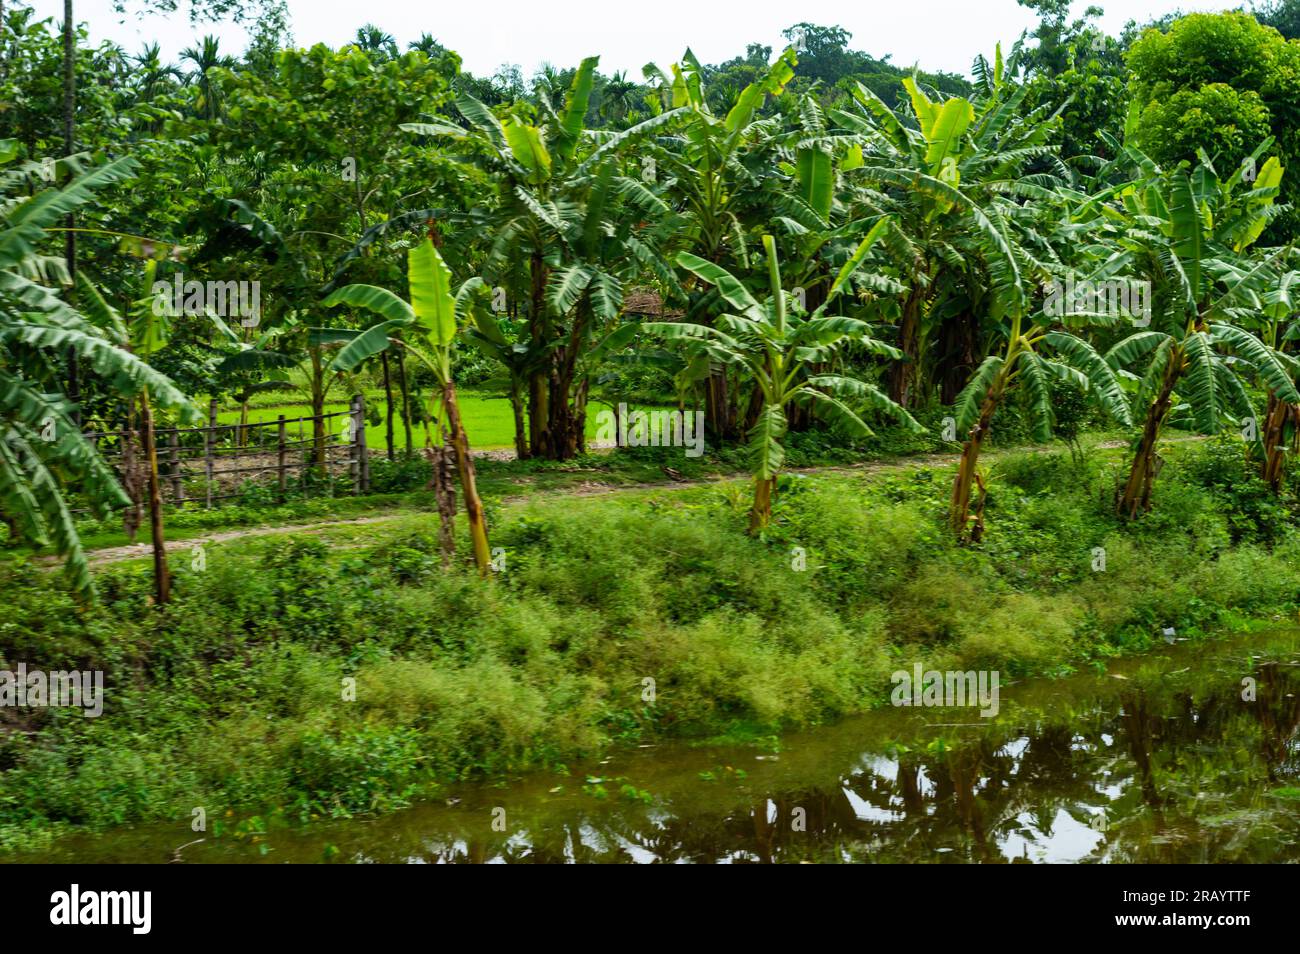 Bananenbäume am Rande einer Dorfstraße. Ländliche Indische Landschaft. Westbengalen Indien Südasiatisch-Pazifischer Raum Stockfoto